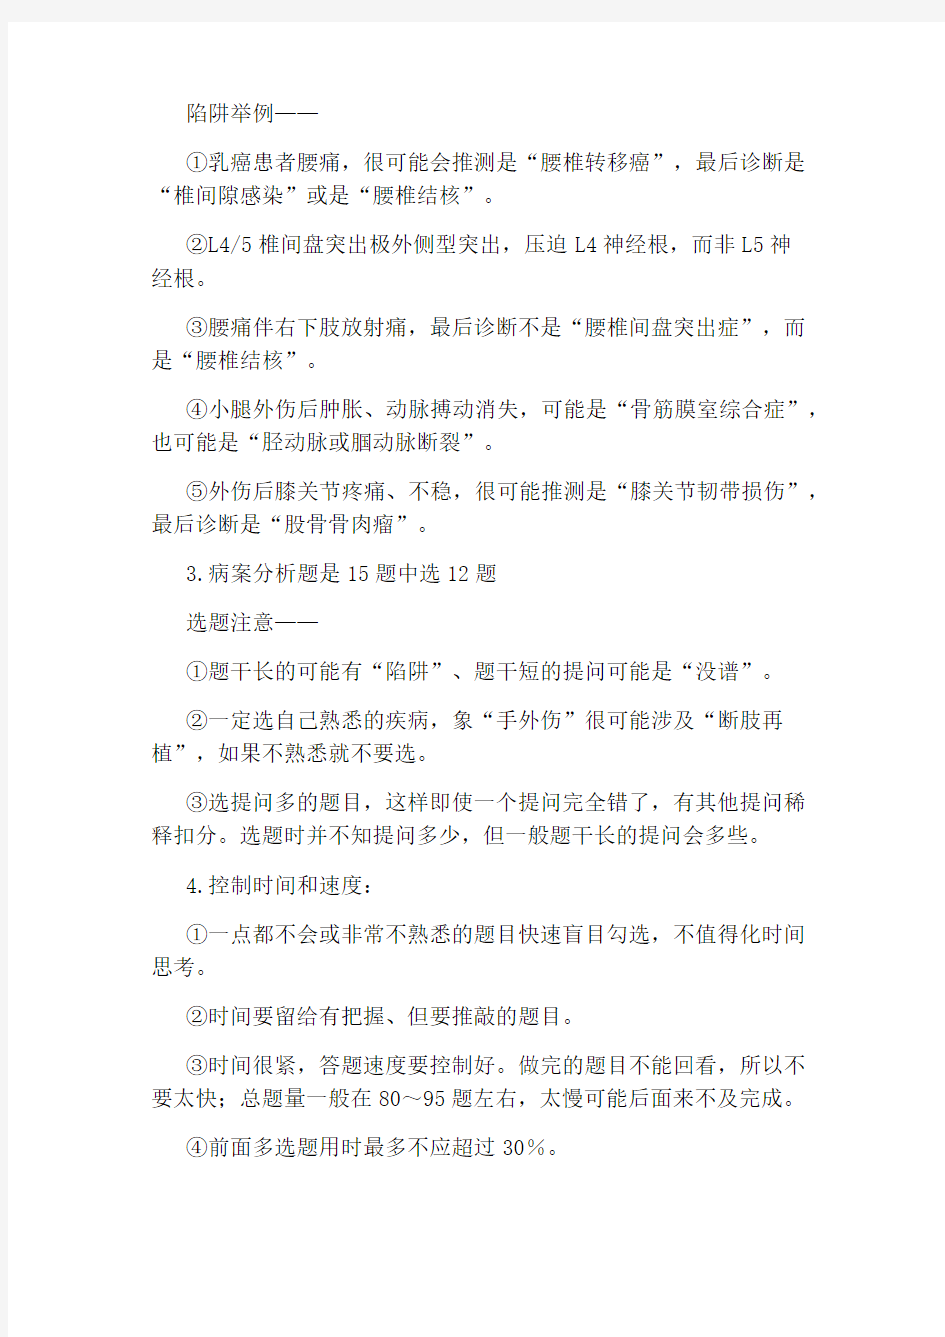 副高级职称申报材料【2020上海卫生高级职称资格评审申报材料条件】